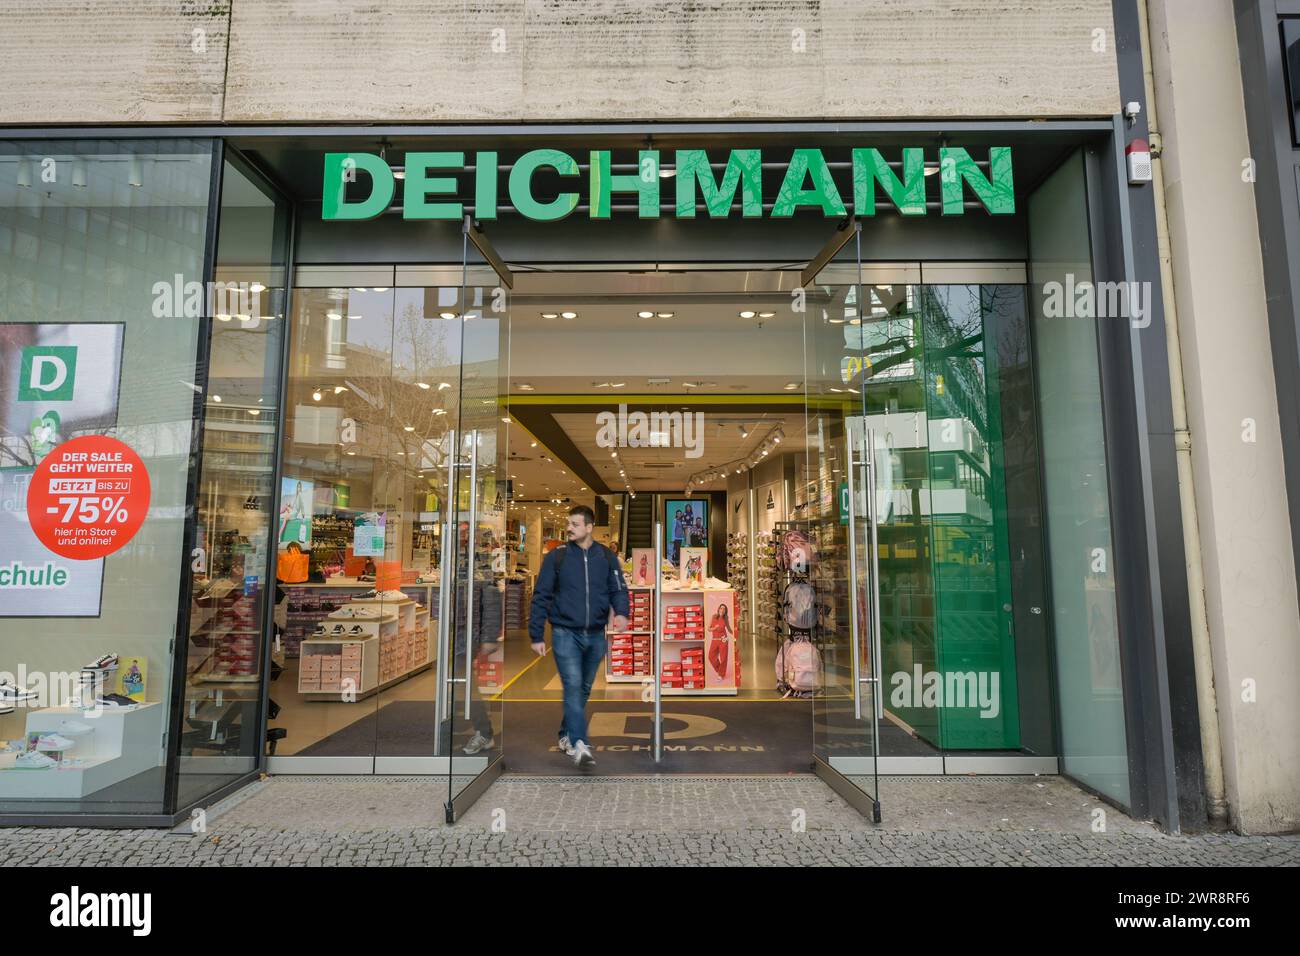 Deichmann Schuhe, Geschäft, Tauentzienstraße, Charlottenburg, Berlin, Deutschland *** Deichmann Shoes, Store, Tauentzienstraße, Charlottenburg, Berlin, Germany Stock Photo